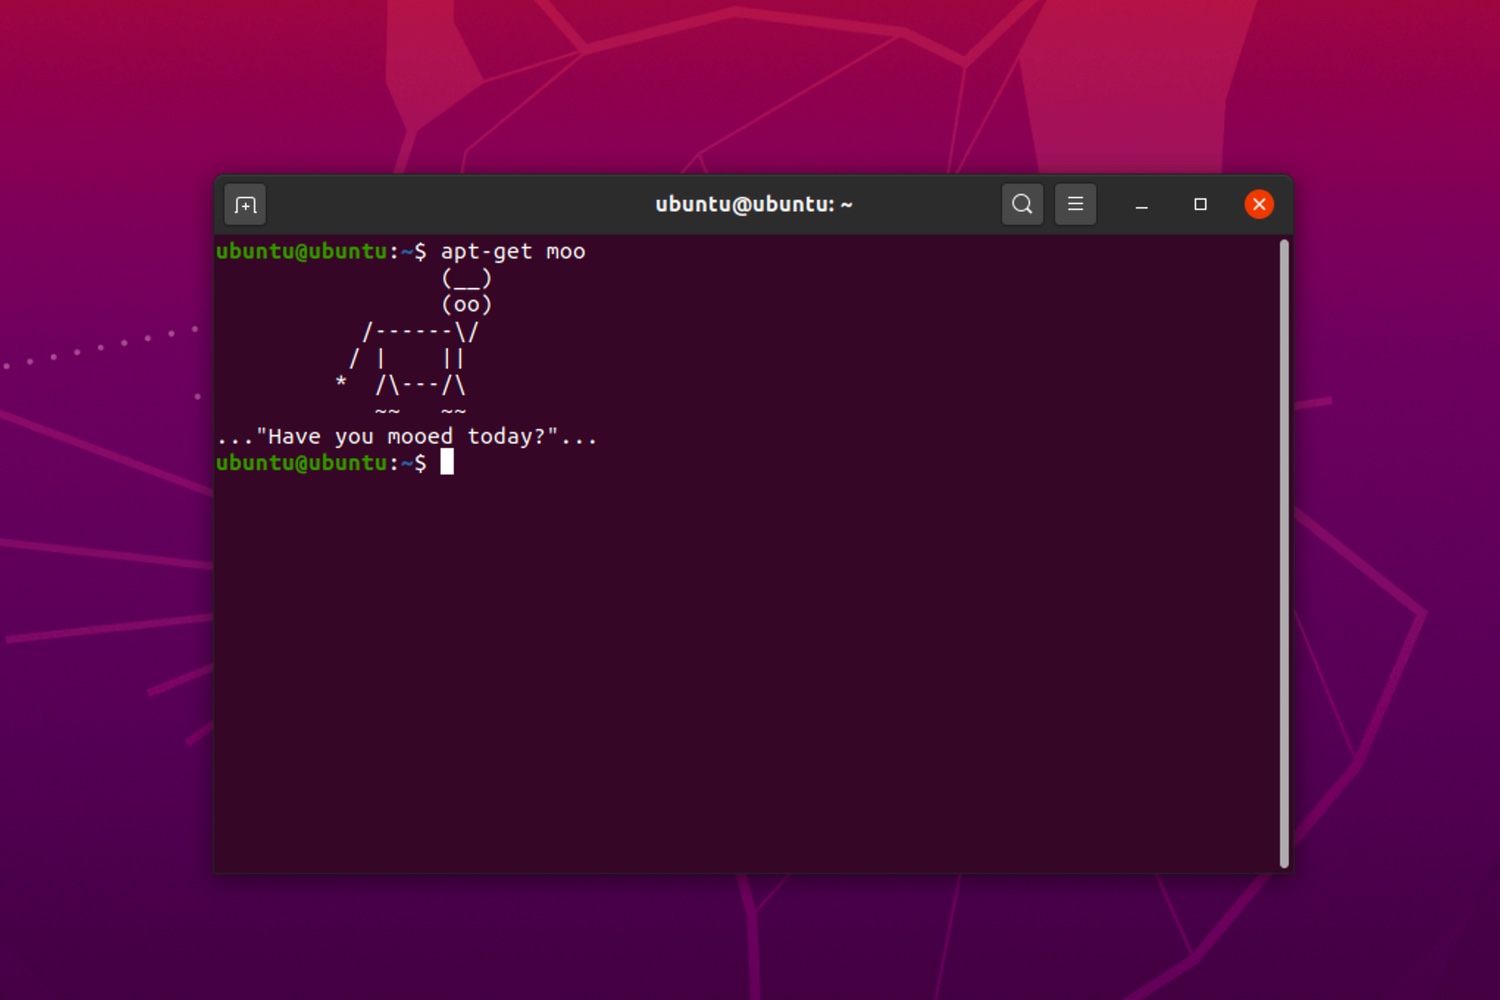 El Terminal de Linux viene repleto de comandos divertidos